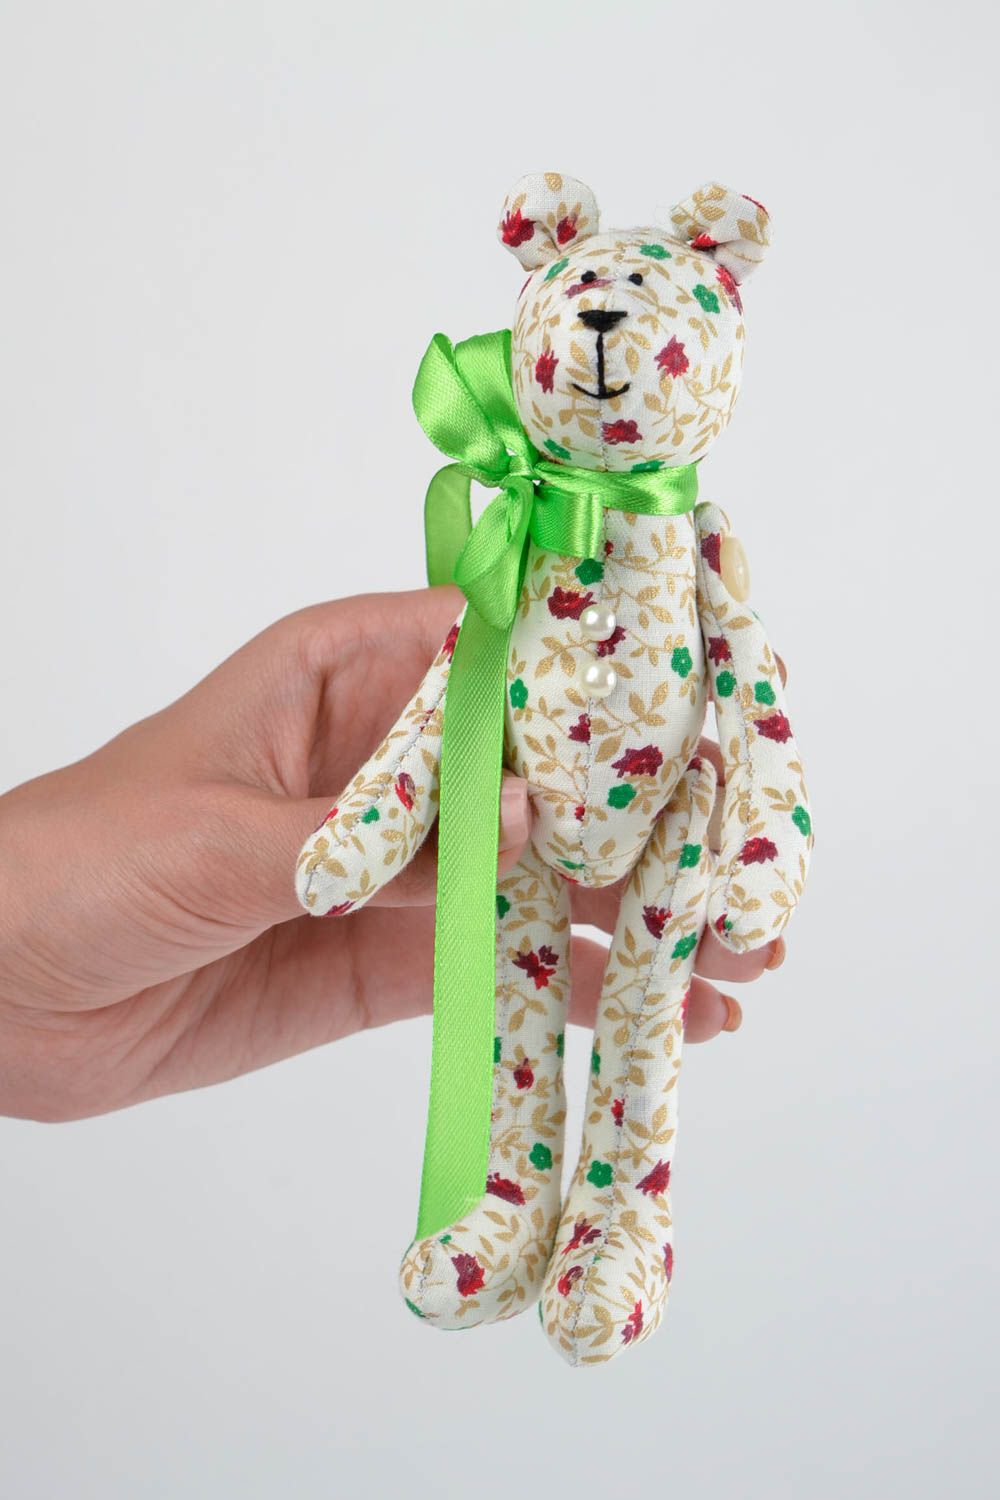 Juguete hecho a mano muñeco para decorar la casa regalo para niños y niñas  foto 2